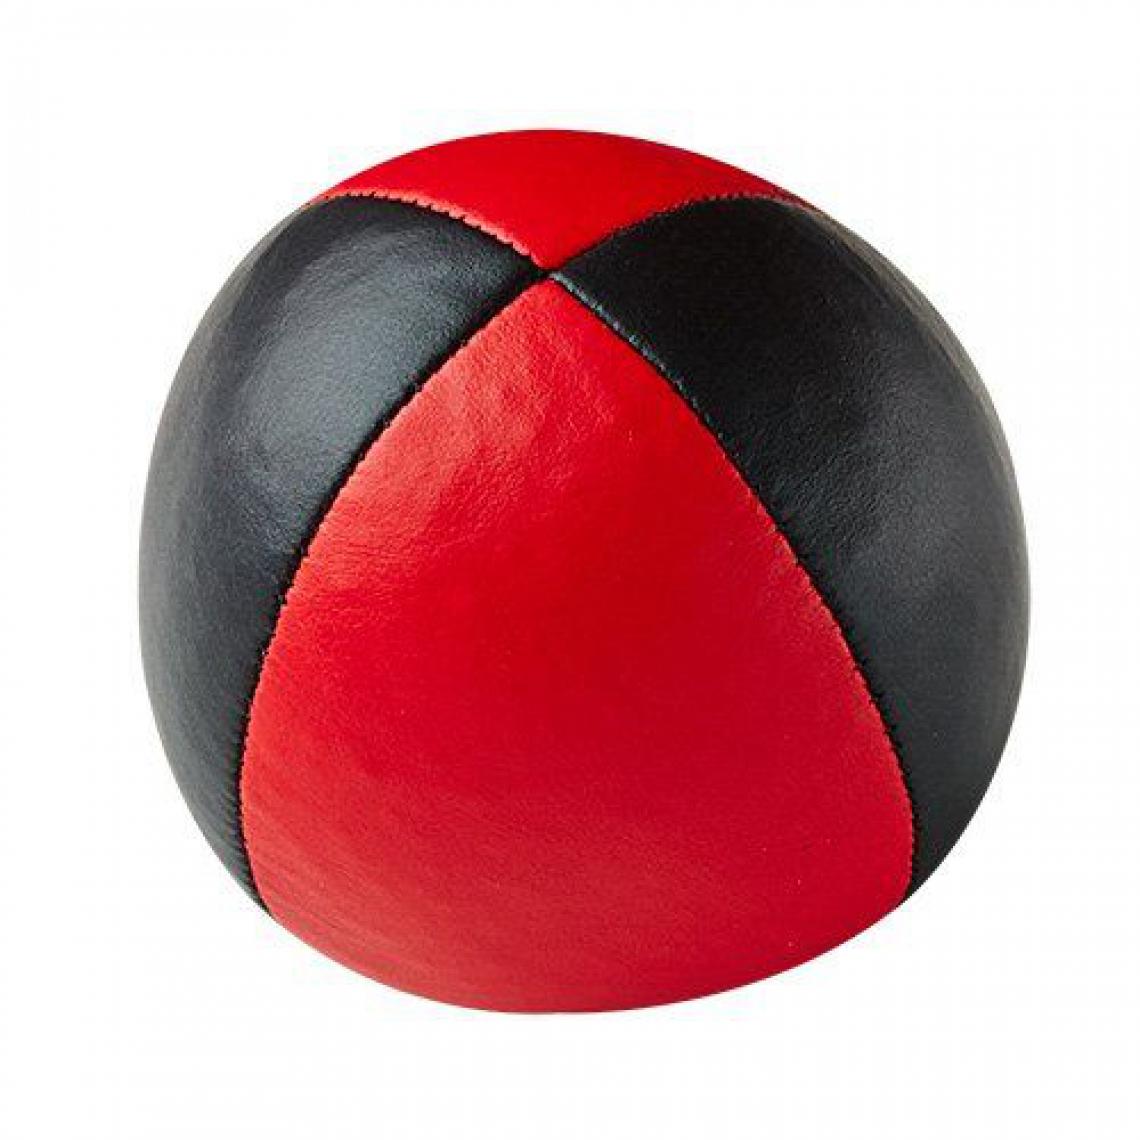 Inconnu - Henrys j05010de B05-Beanbags Premium, diamètre 67mm, noir/rouge - Jeux de balles